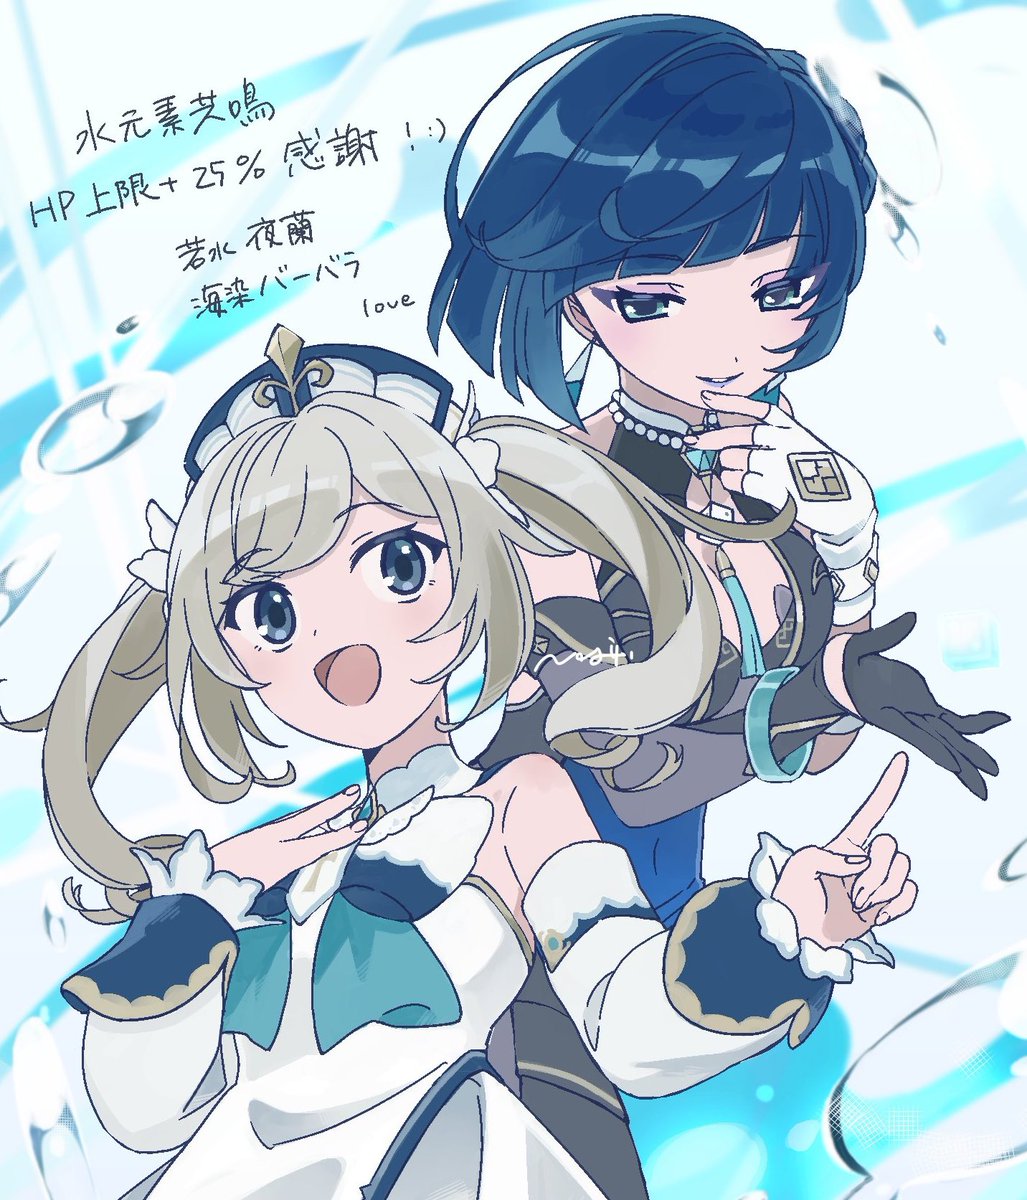 barbara (genshin impact) ,yelan (genshin impact) multiple girls 2girls twintails gloves blonde hair dress twin drills  illustration images